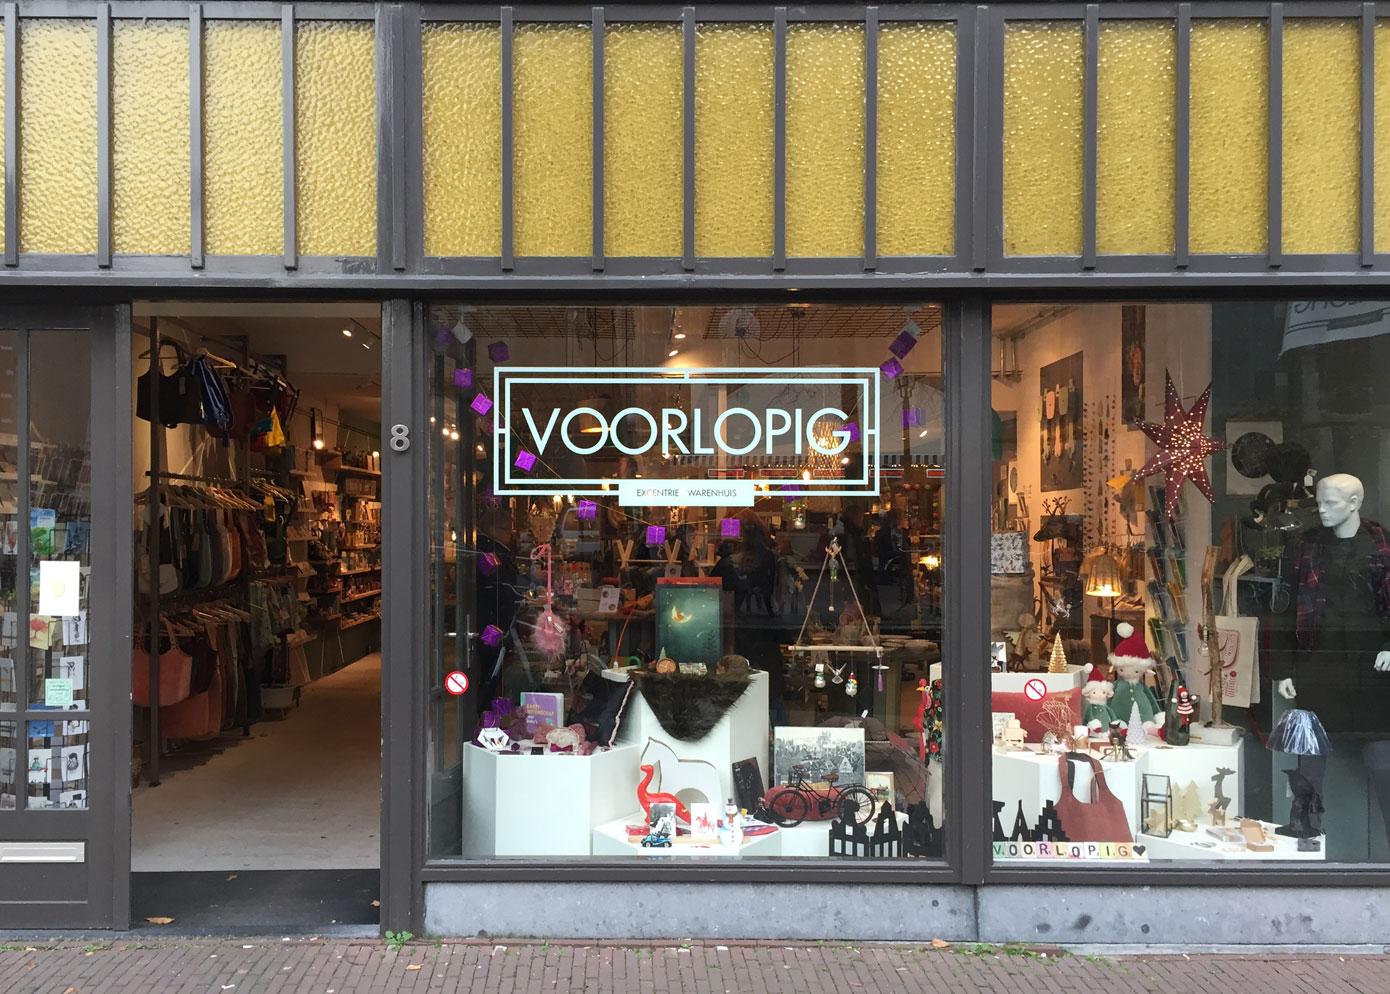 Foto Voorlopig in Delft, Einkaufen, Geschenke, Whonen & kochen - #1